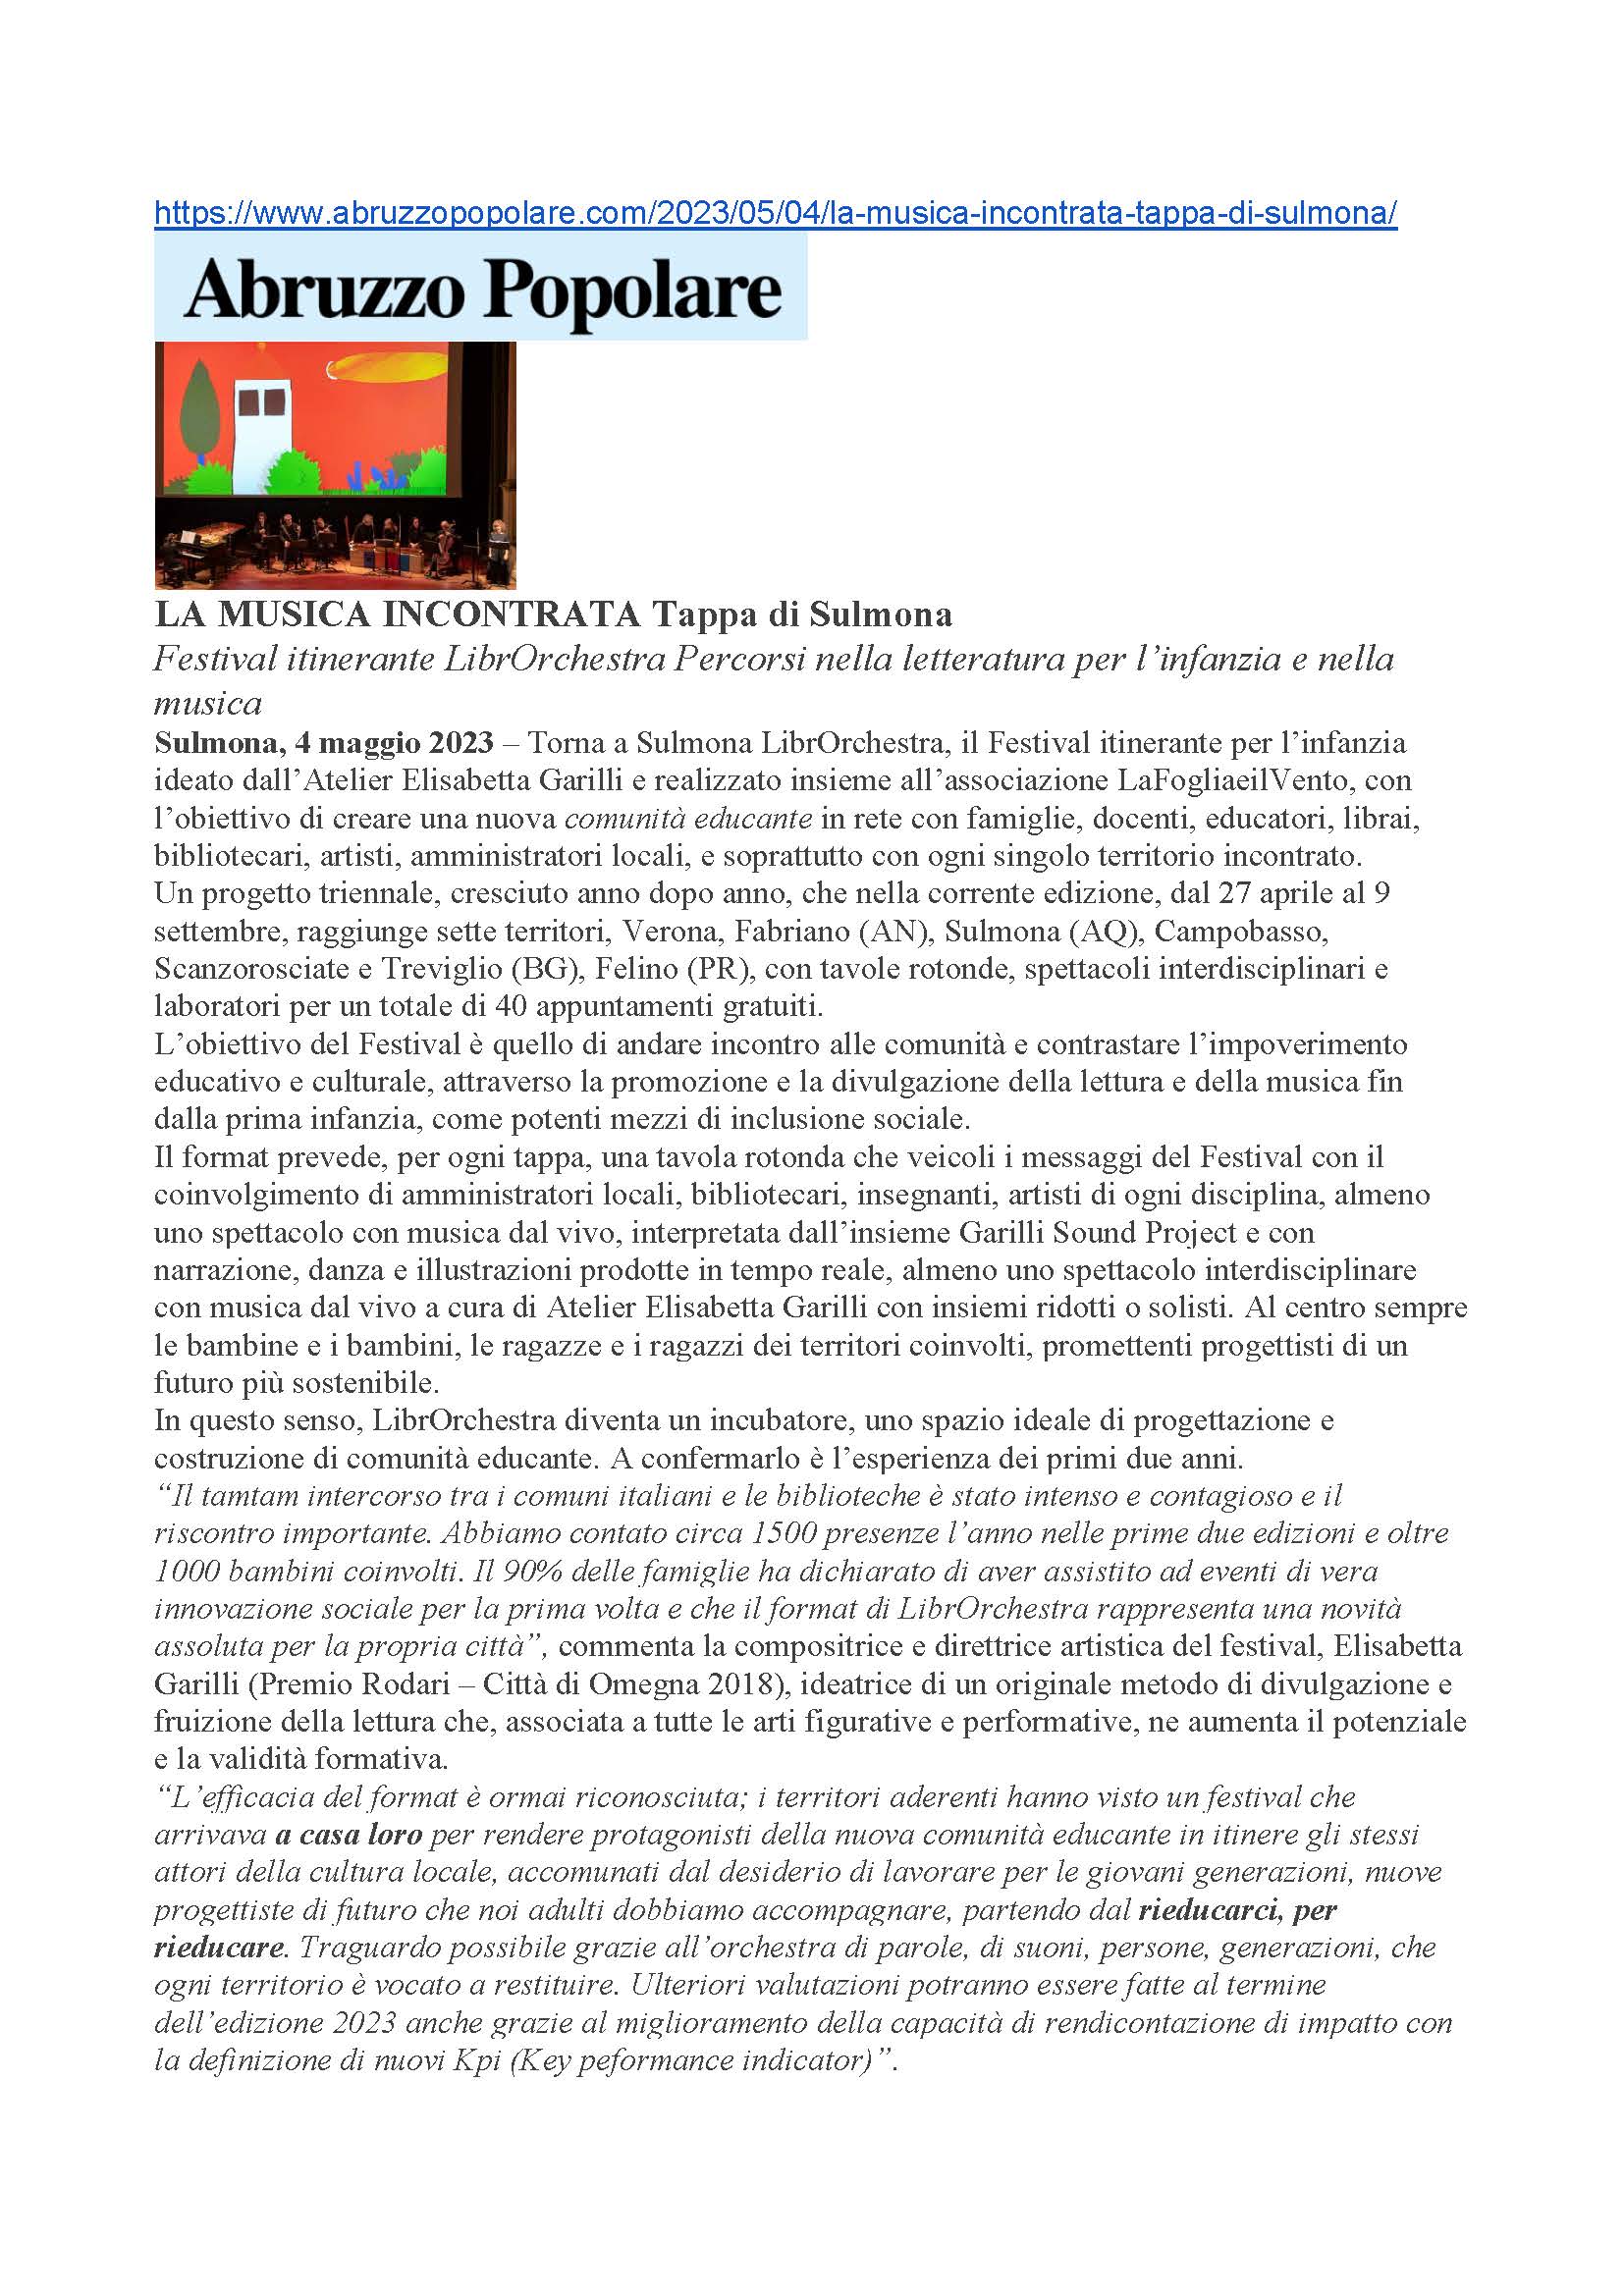 06 LibrOrchestra 2023 Abruzzo Popolare.com 4 Maggio 2023 Pagina 1